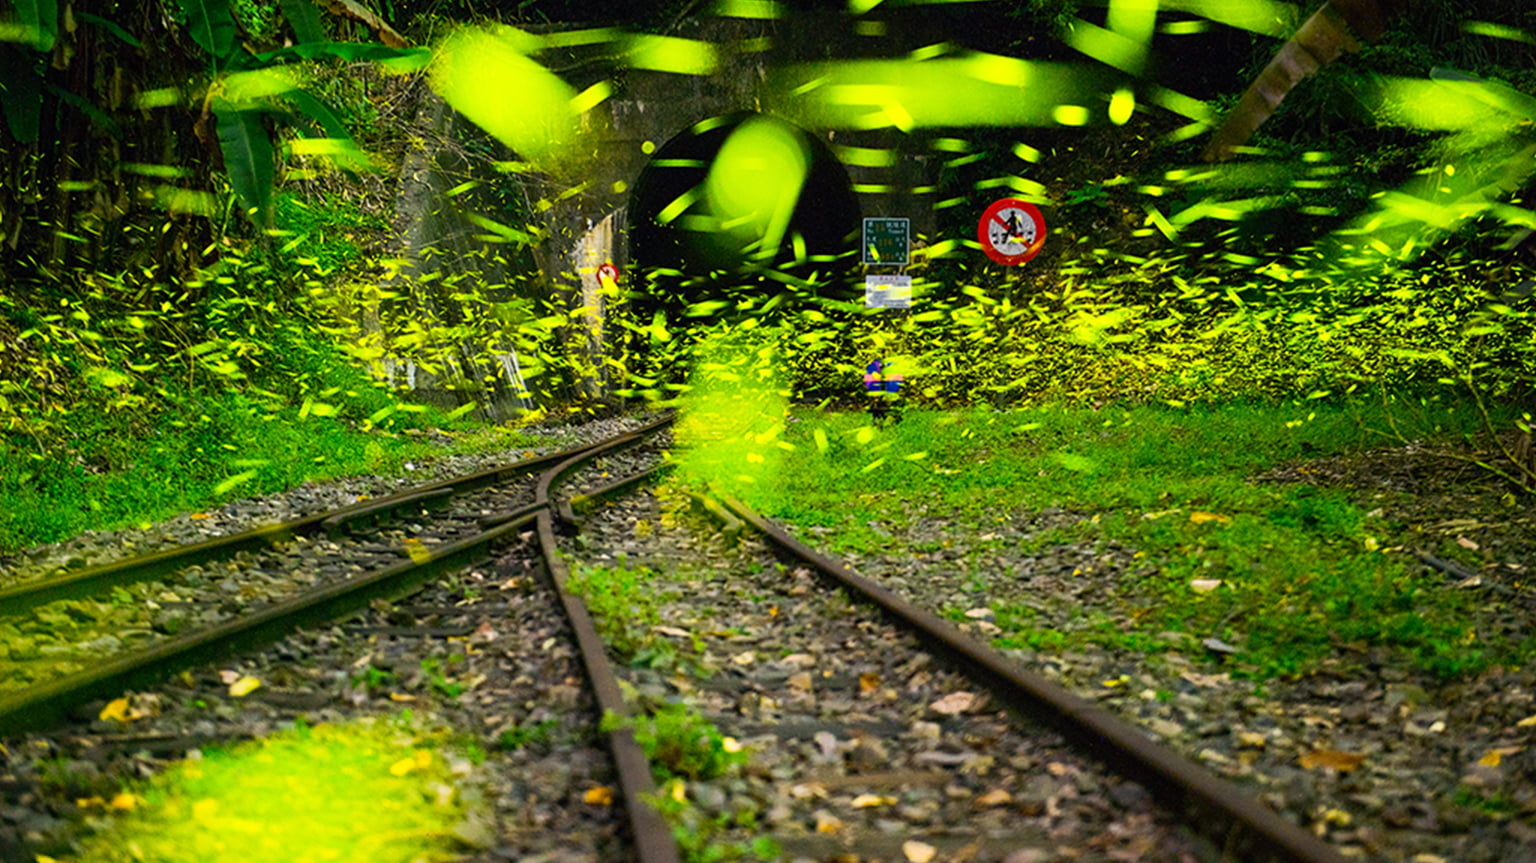 관광지 시설-동메달-양런자오-삼림철도터널밖 춤추며 흩날리는 초록빛 요정